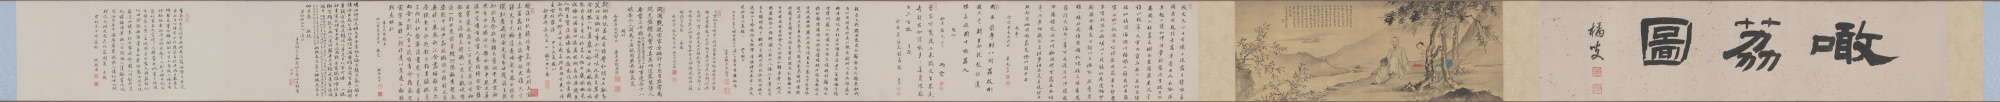 清 华喦 敢荔图(全卷)绢本28X548辽宁省博